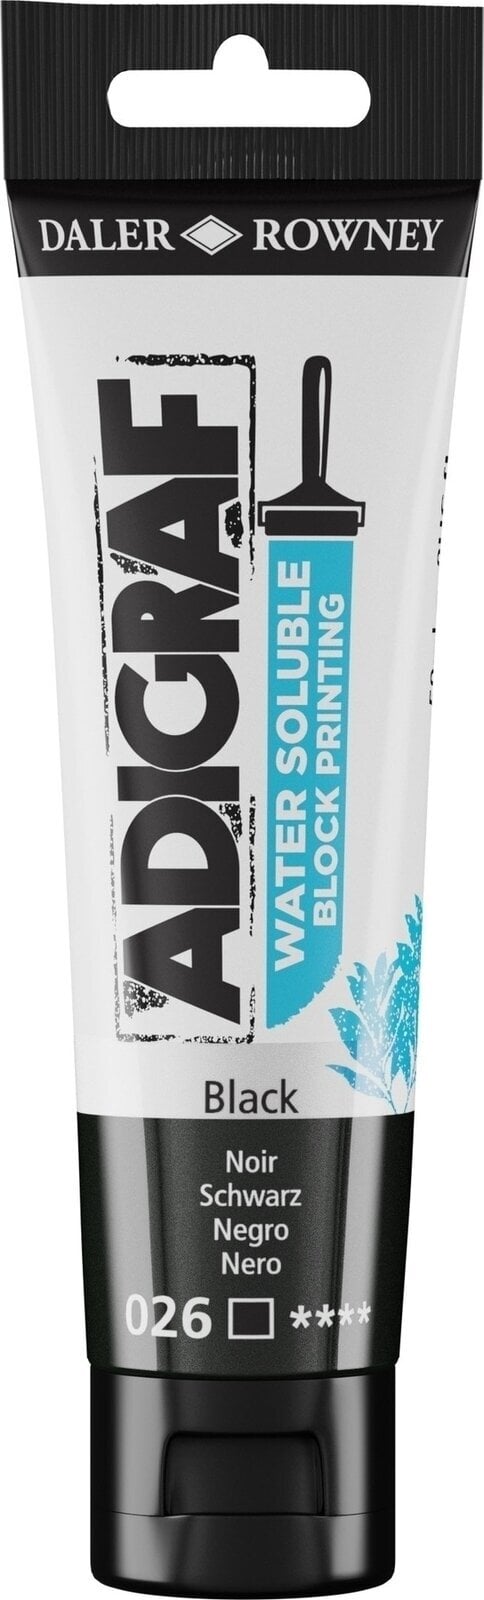 Verf voor linosnede Daler Rowney Adigraf Block Printing Water Soluble Colour Verf voor linosnede Black 59 ml